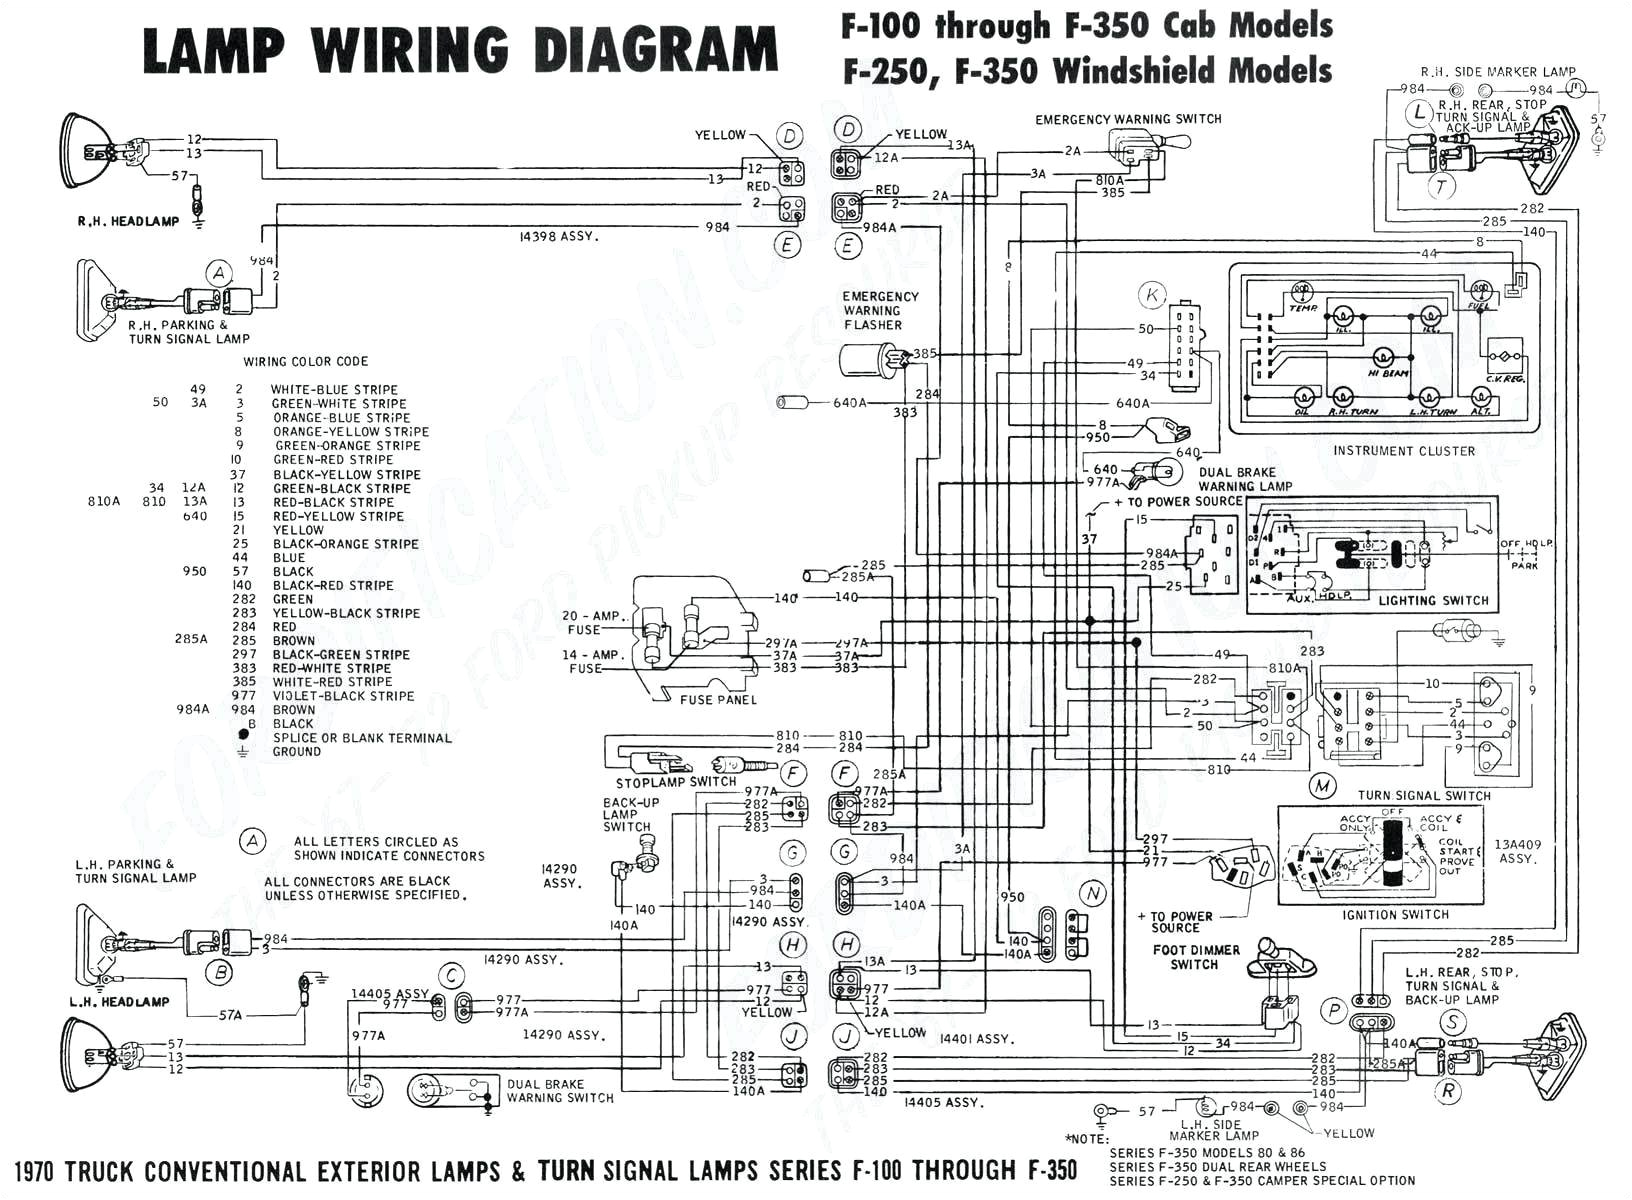 2014 ford focu wiring diagram wiring diagram databaseford focus wiring diagram sony amp